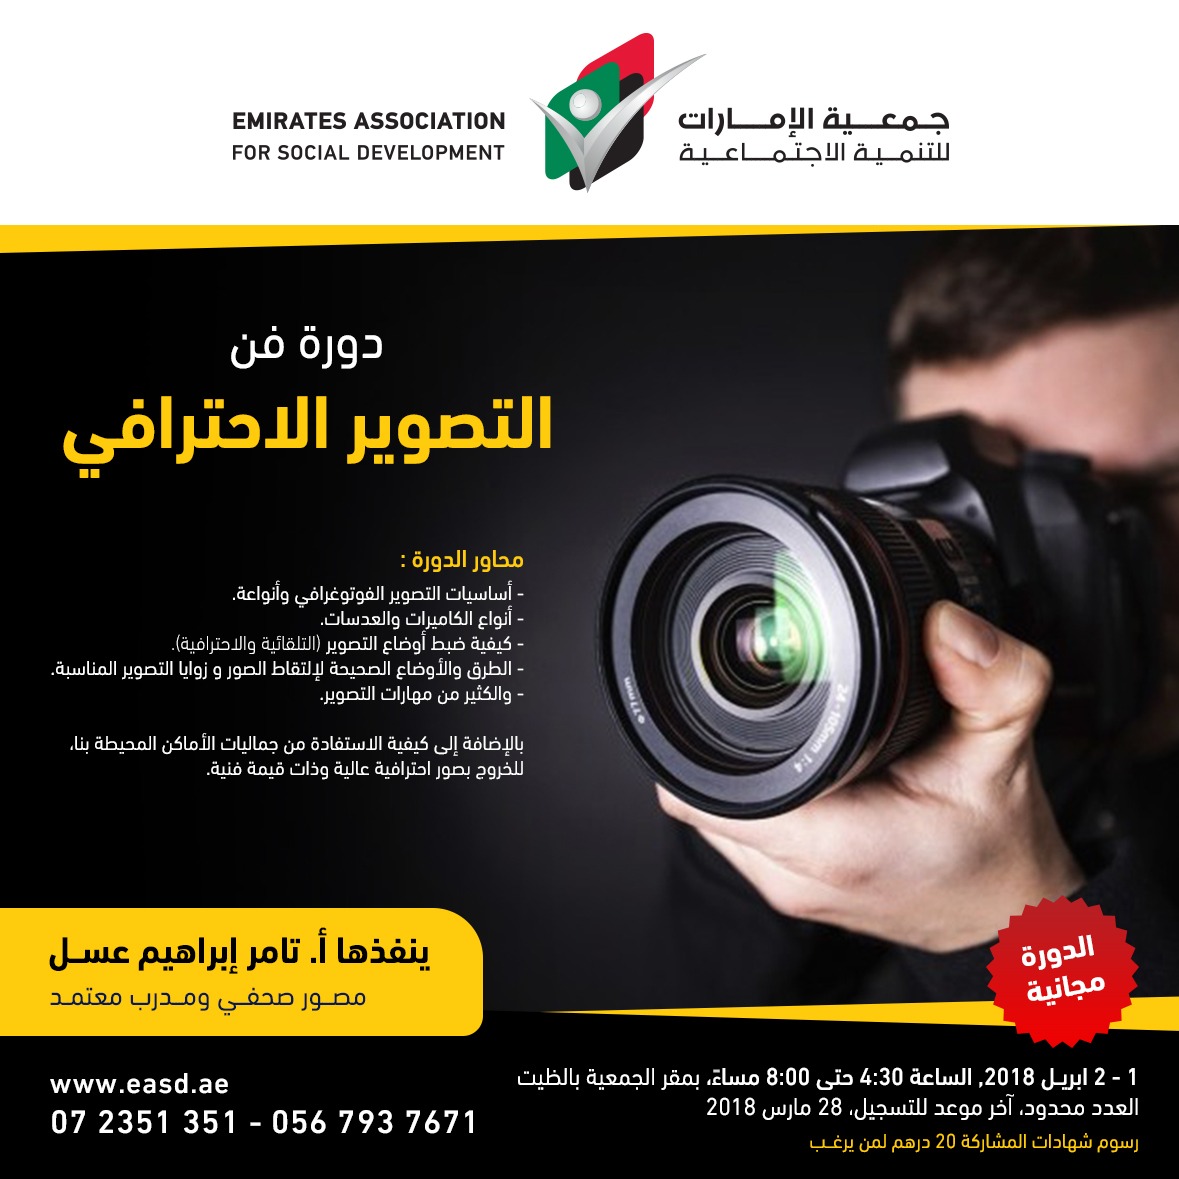 دورة فن التصوير الإحترافي _ جمعية الإمارات للتنمية الاجتماعية